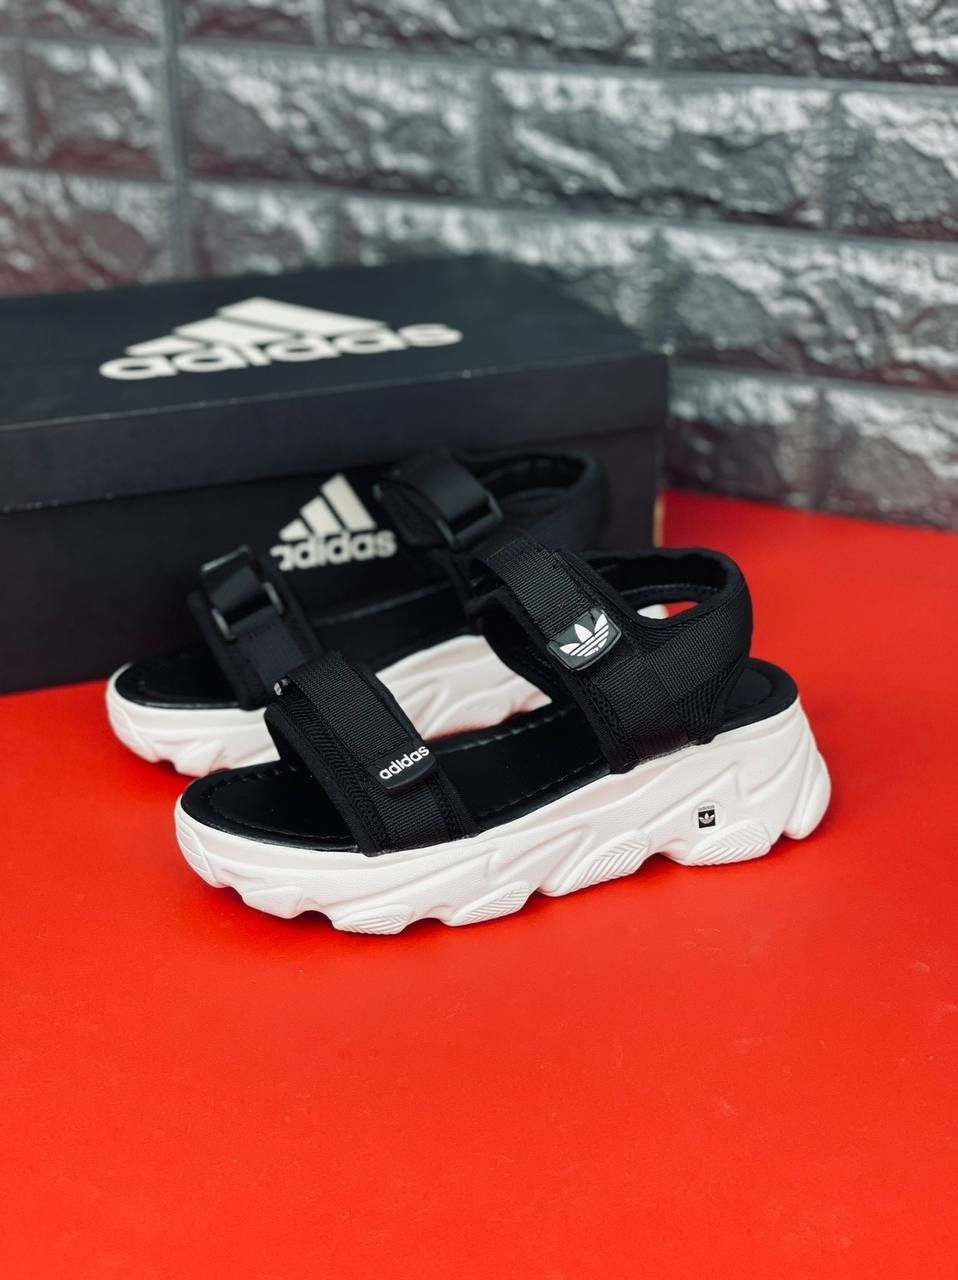 ЖЕНСКИЕ босоножки Adidas сандалии чёрного цвета Адидас на липучке35-40